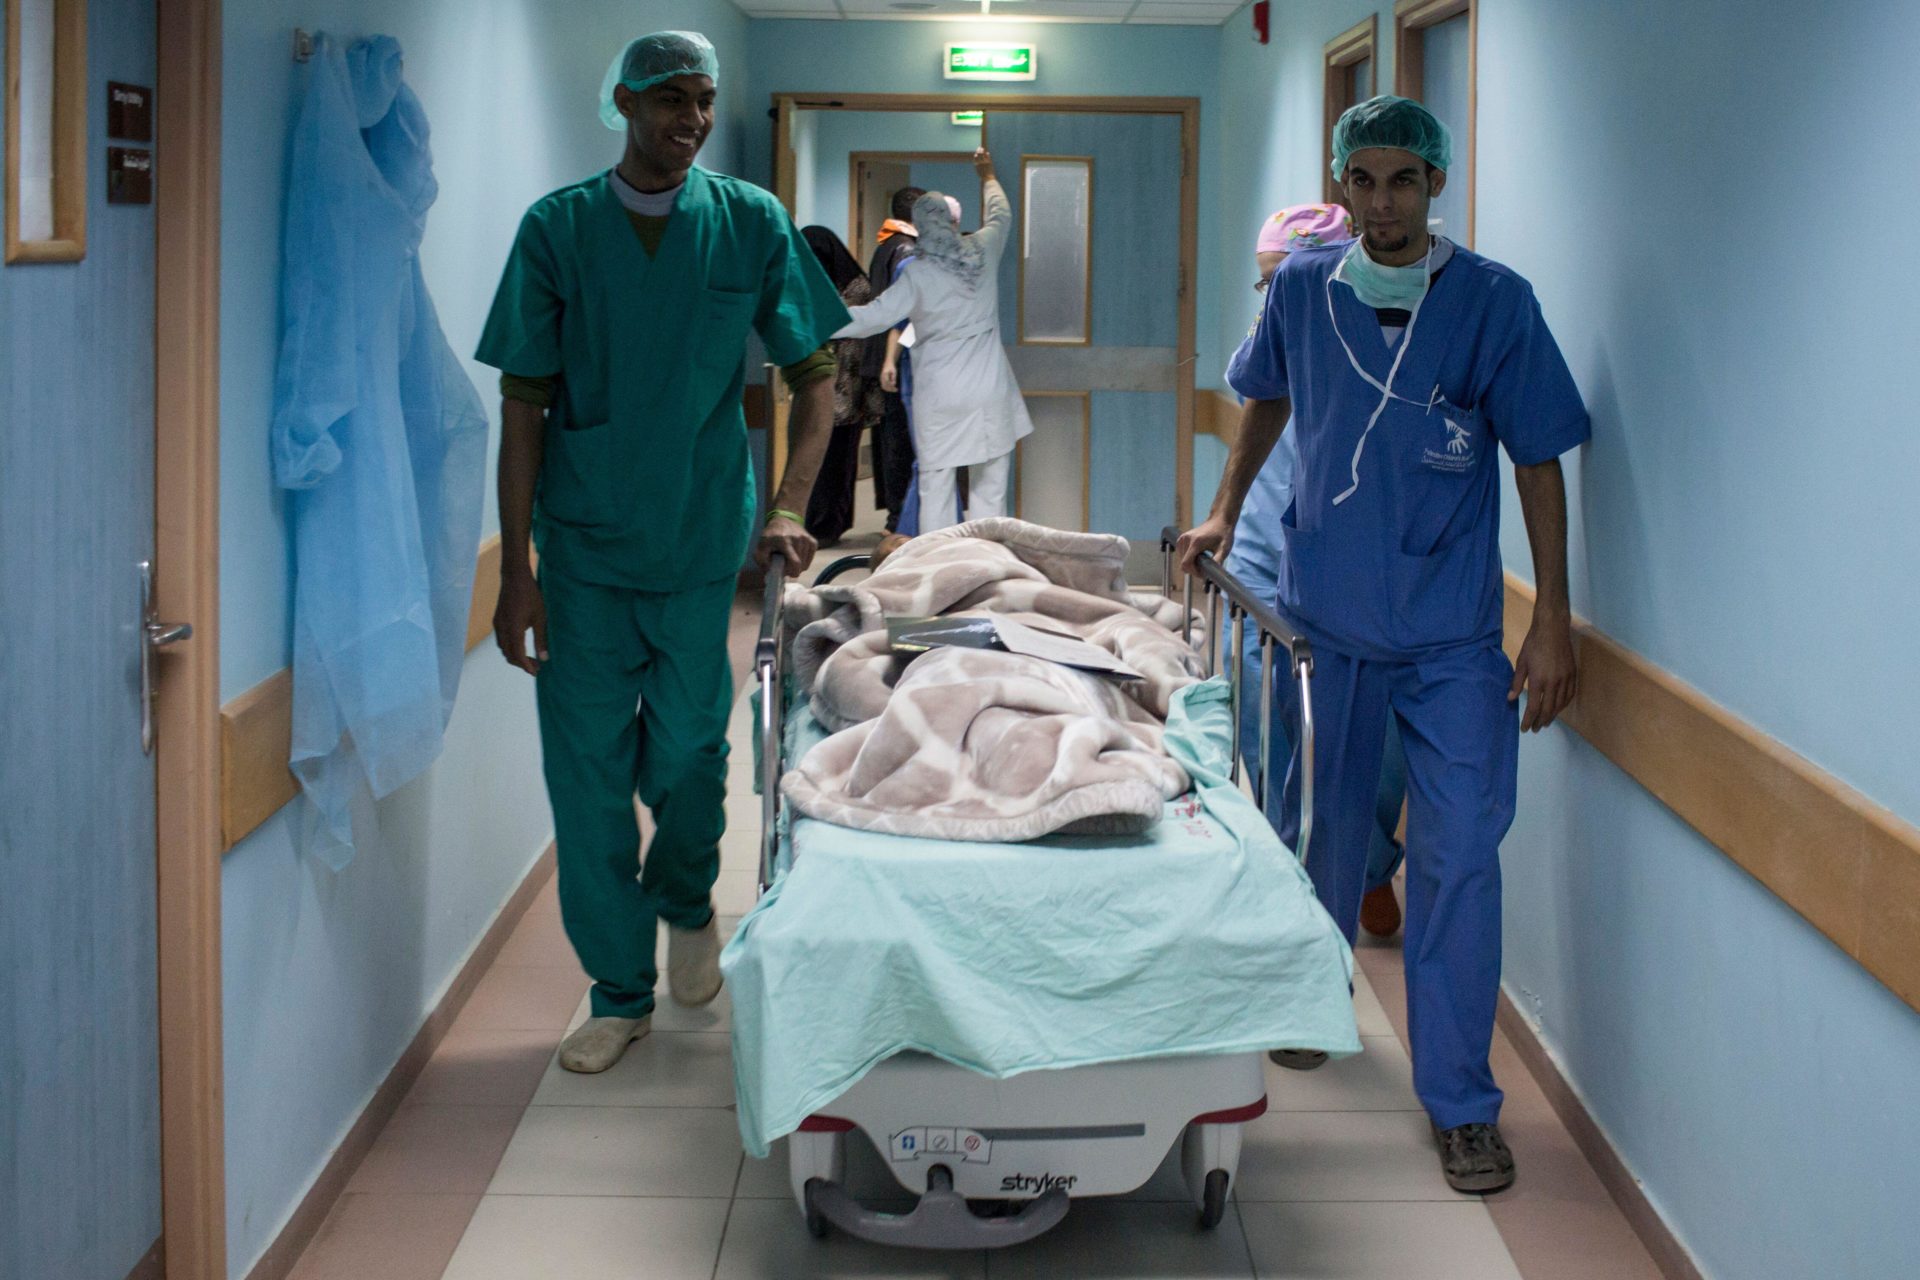 ‘I never seen injuries like this’ - Irish surgeon returns from Gaza